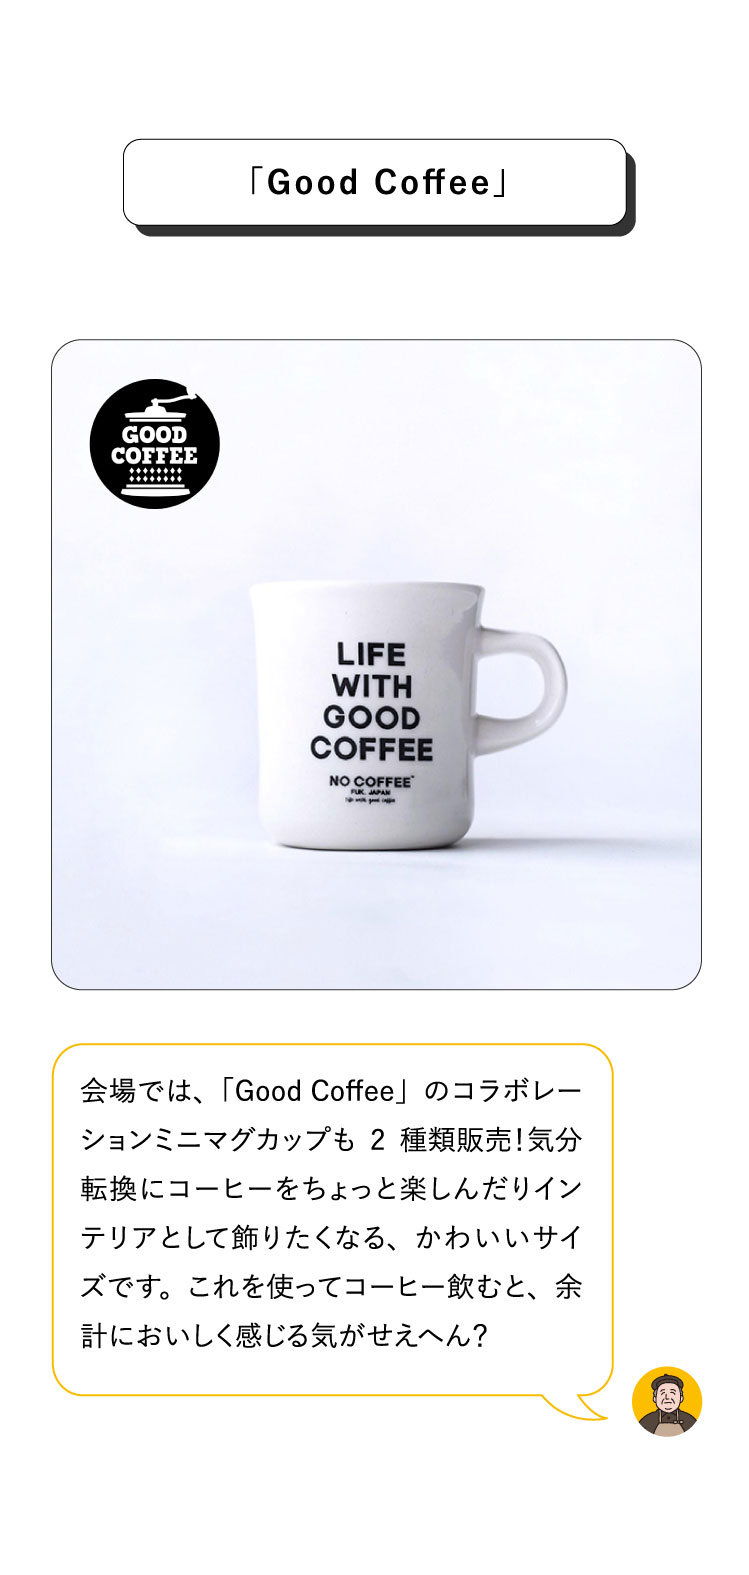 会場では、「Good Coffee」のコラボレーションミニマグカップも2種類販売！気分転換にコーヒーをちょっと楽しんだりインテリアとして飾りたくなる、かわいいサイズです。これを使ってコーヒー飲むと、余計においしく感じる気がせえへん？「Good Coffee」